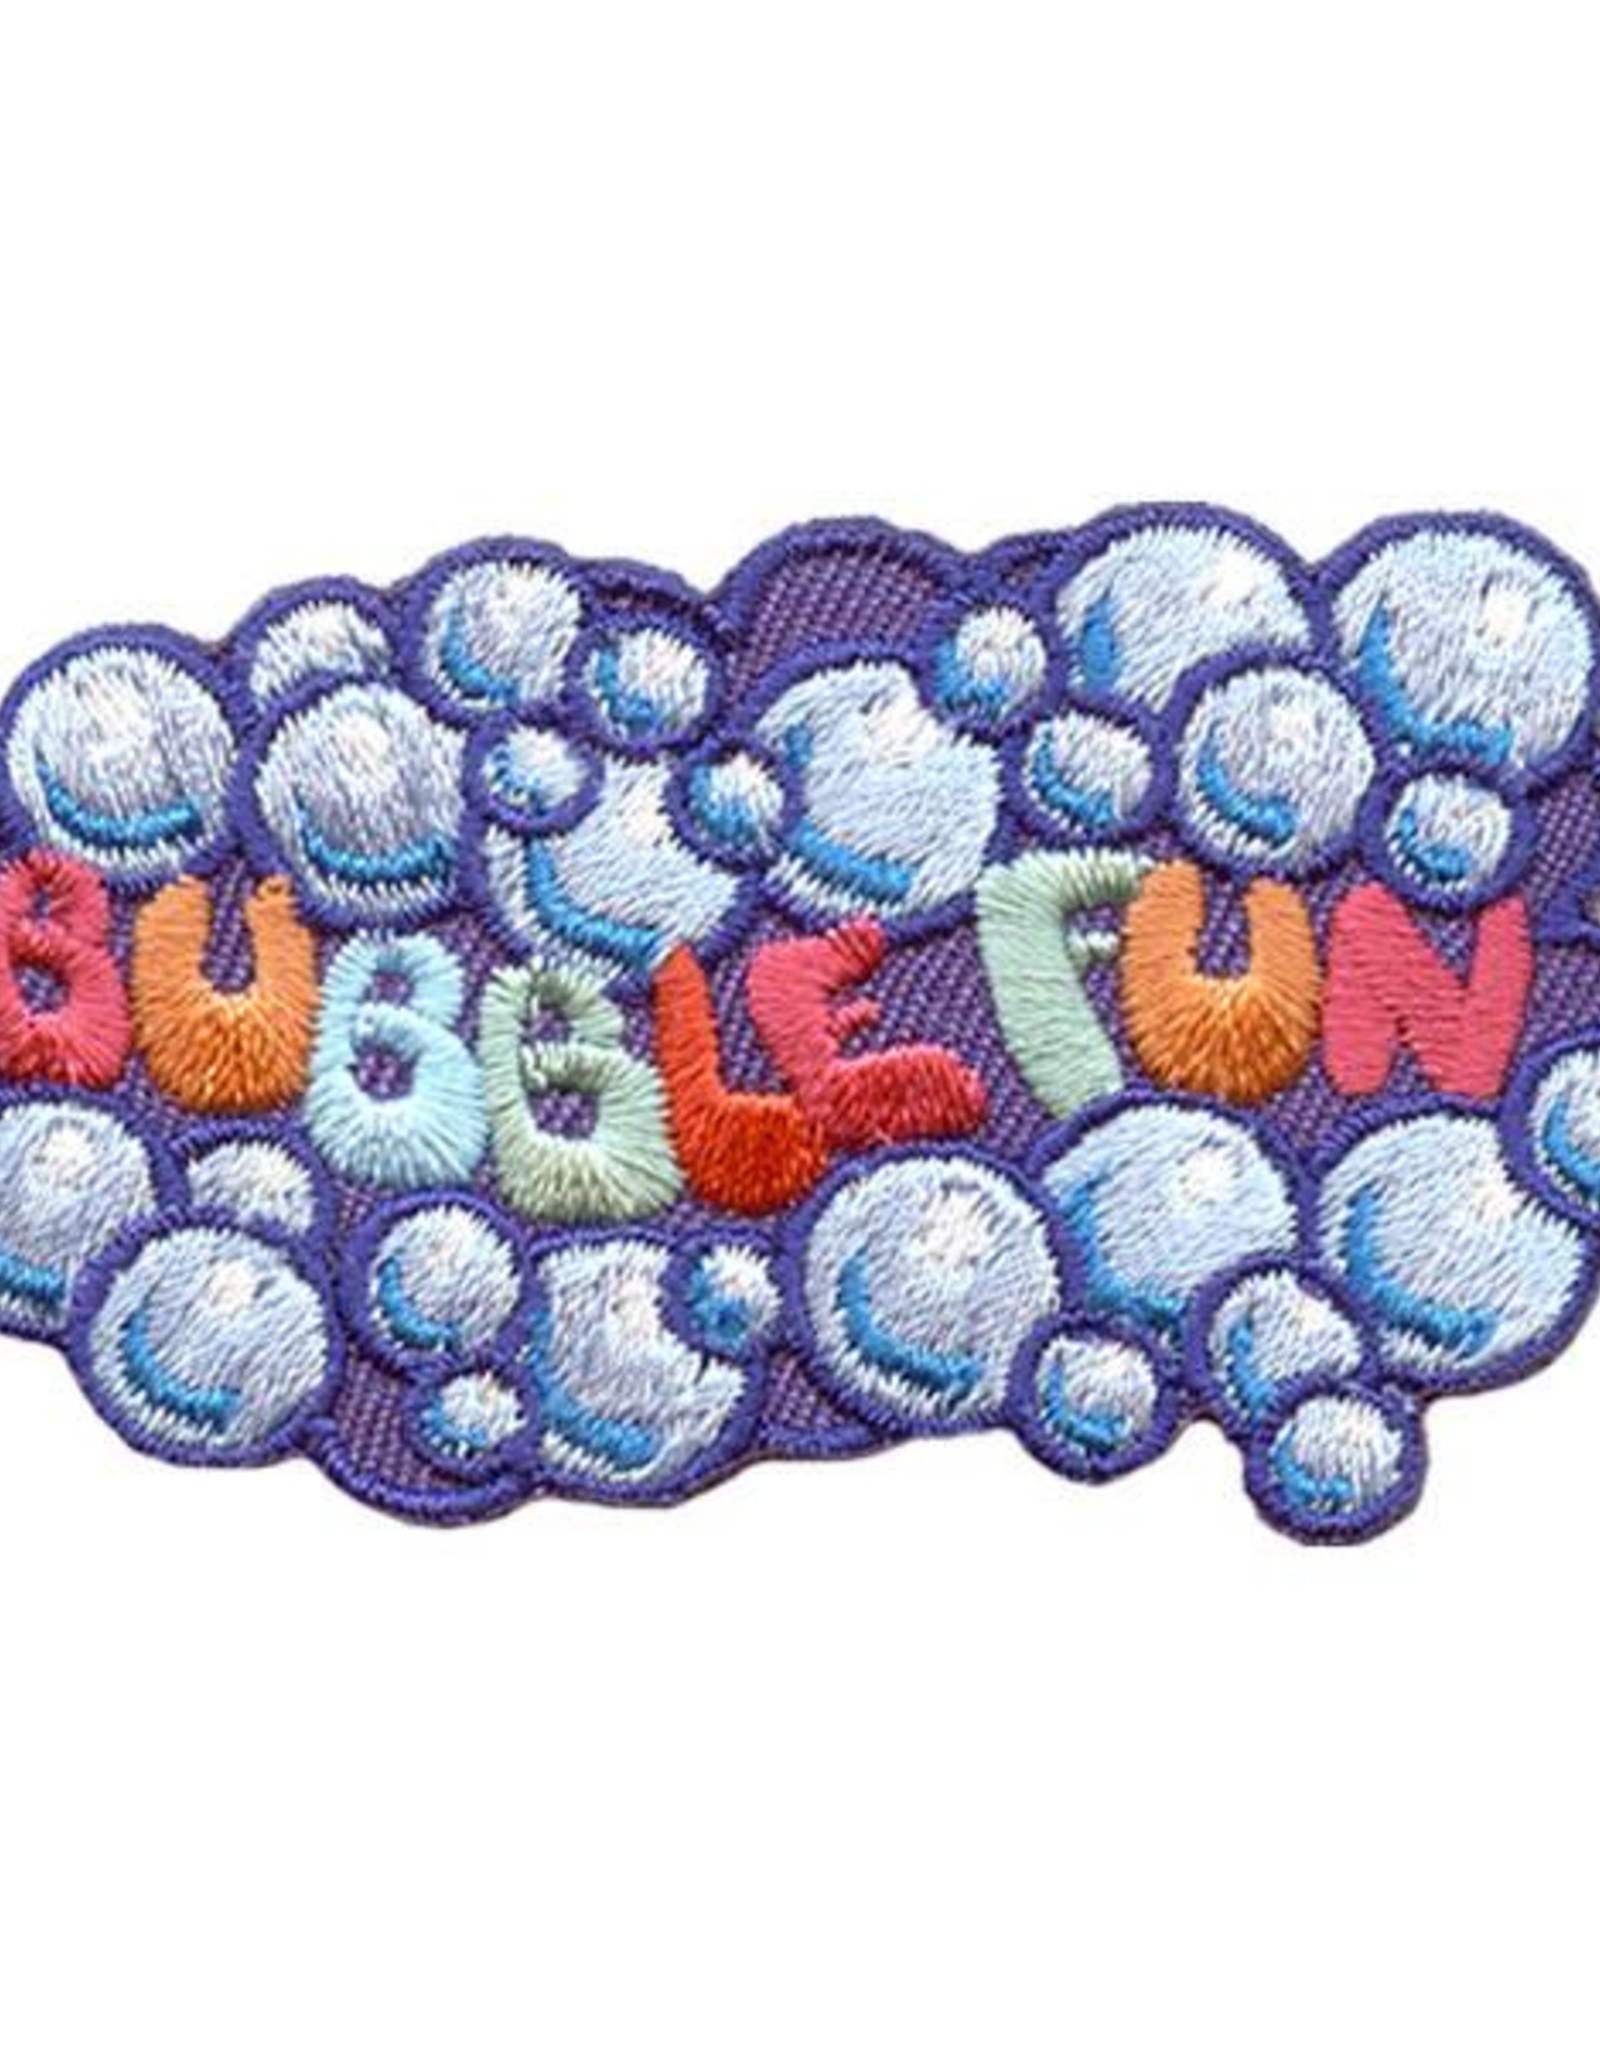 Advantage Emblem & Screen Prnt *Bubble Fun Fun Patch